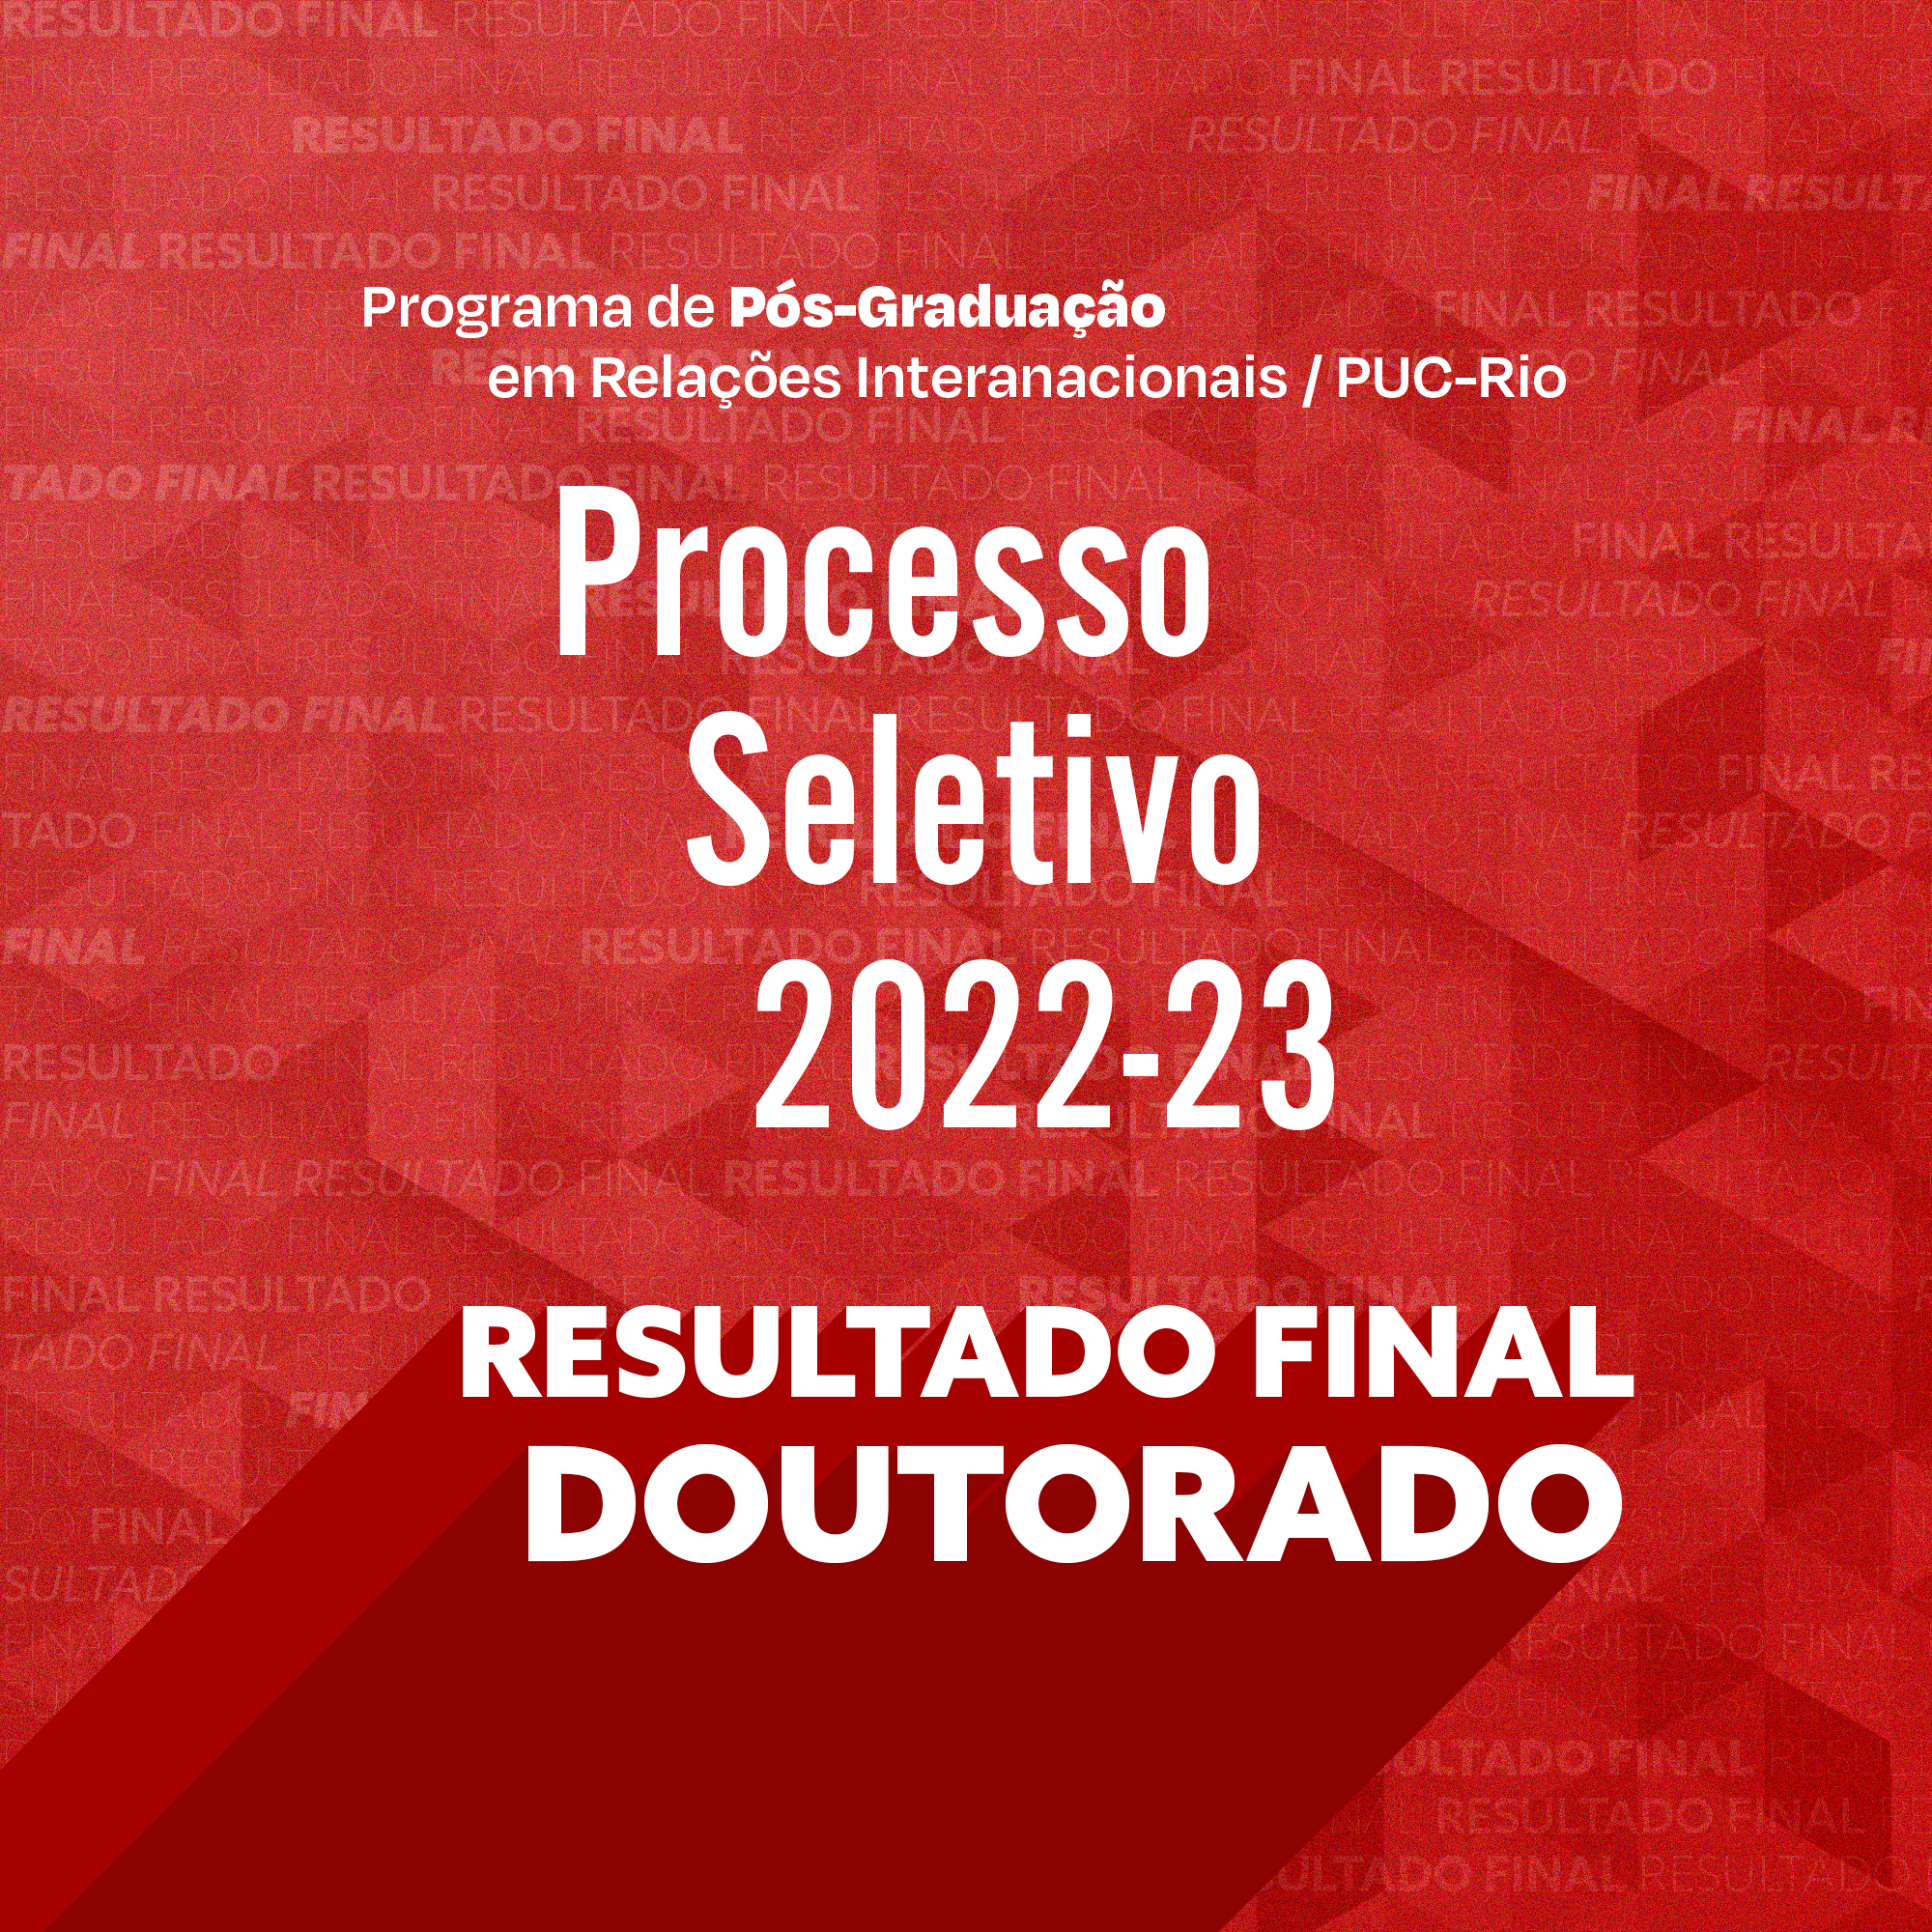 Resultado final do Processo Seletivo da Pós-Graduação 2022/23 | DOUTORADO